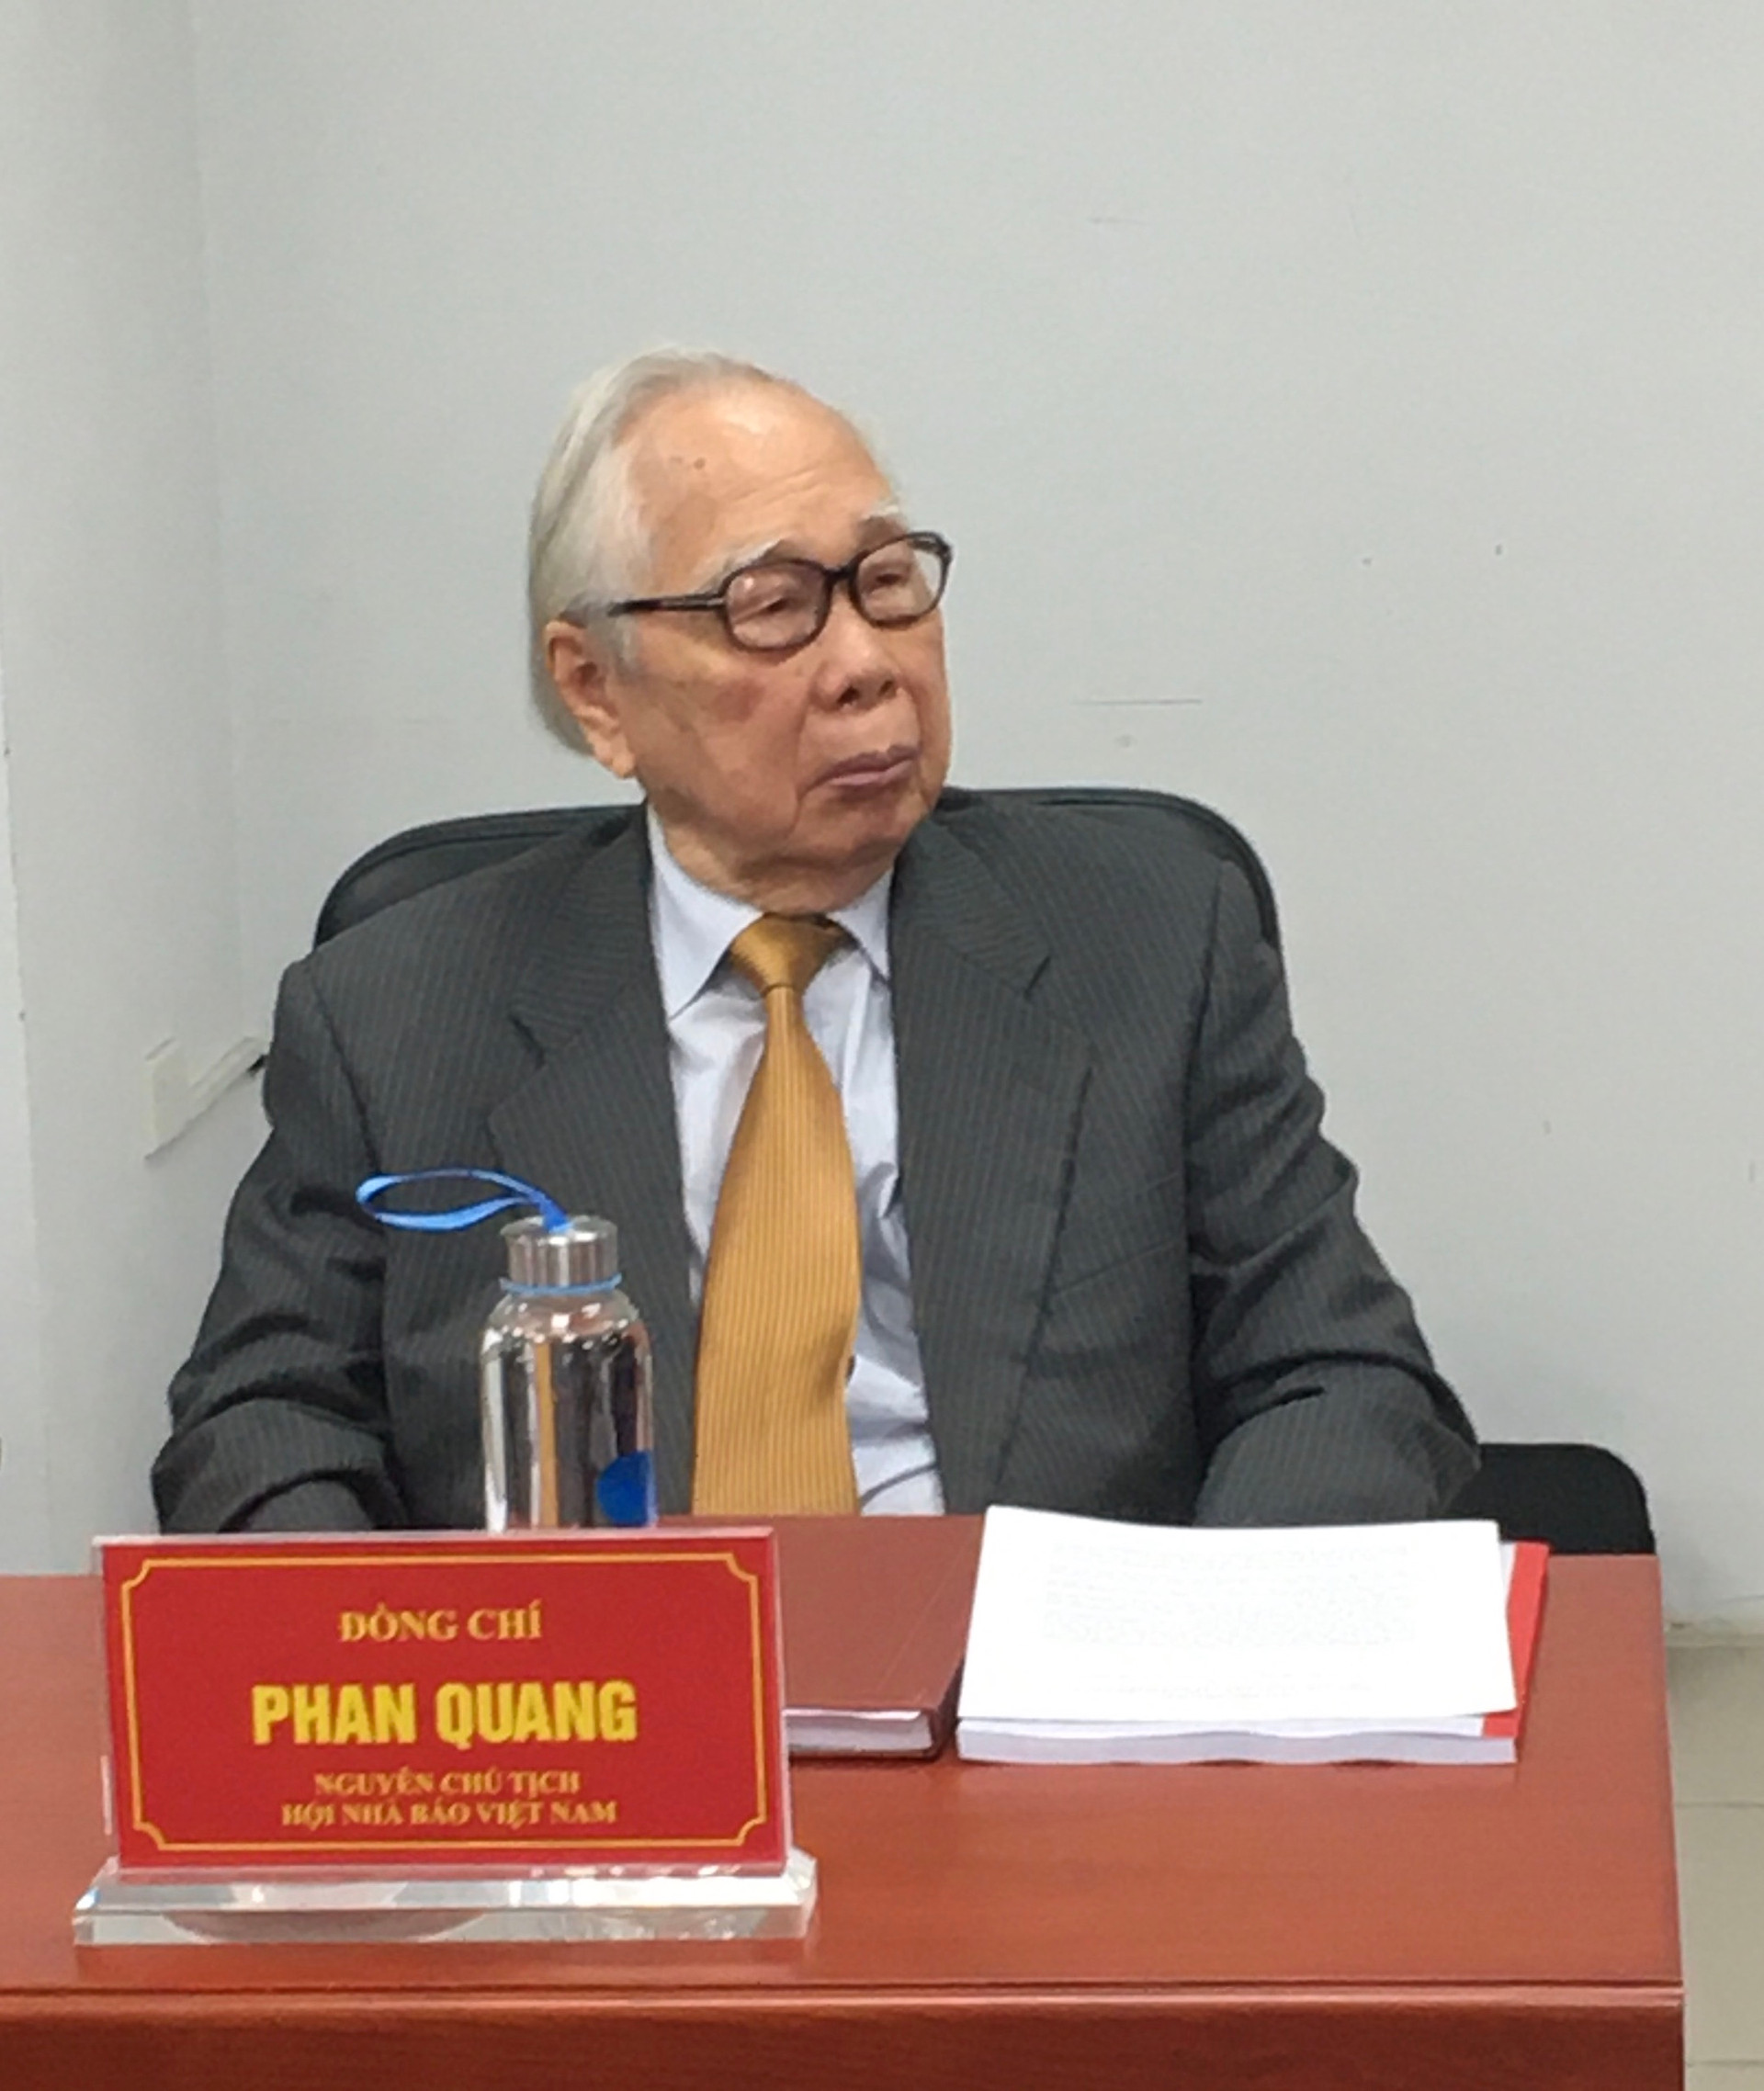 Nhà báo Phan Quang – Người chép sử thời đại Hồ Chí Minh qua các trang báo - Ảnh 1.